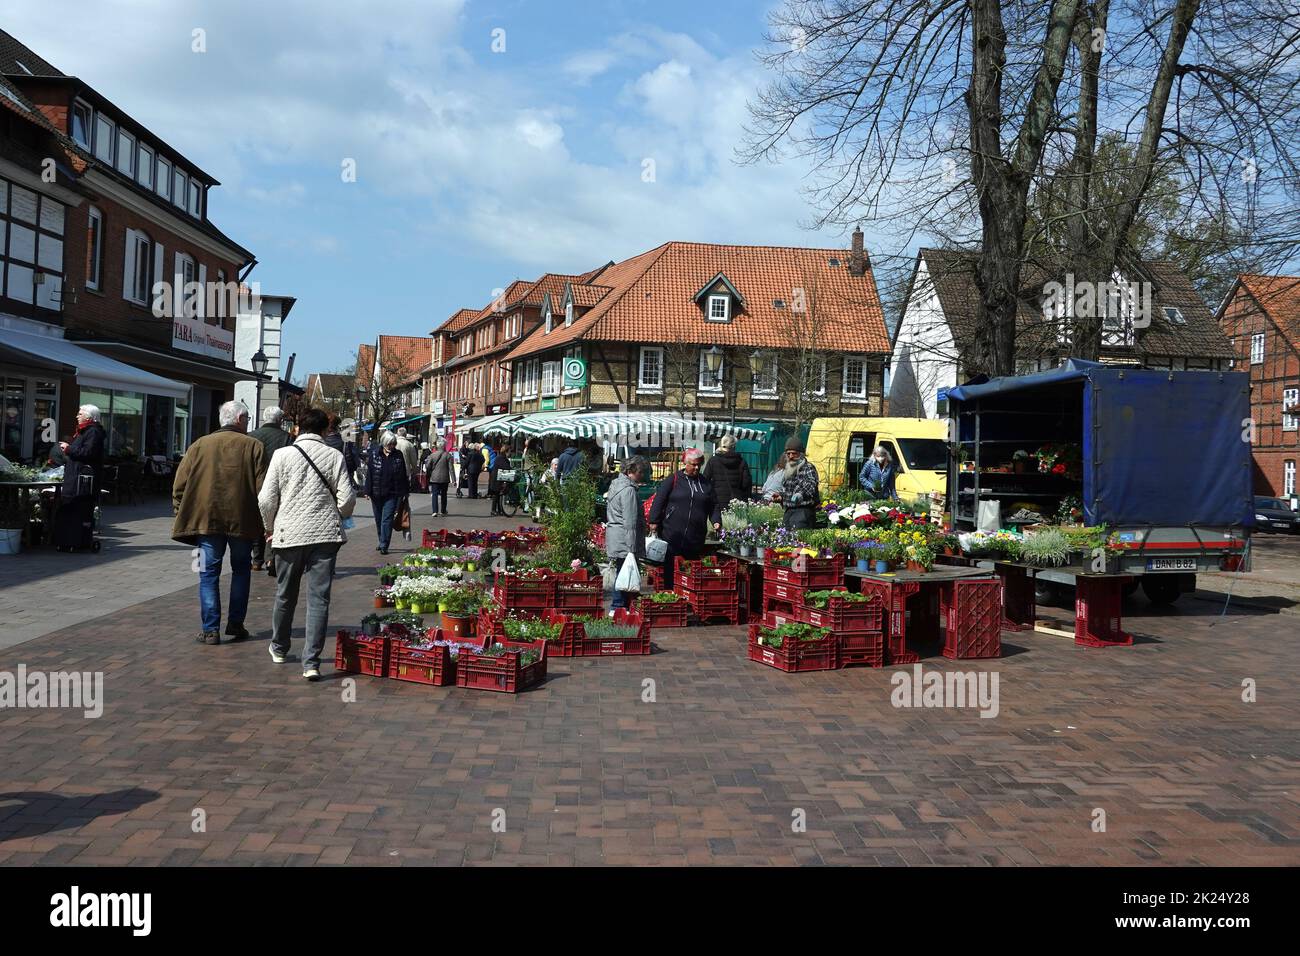 Wochenmarkt auf dem Kirchplatz, Niedersachsen, Deutschland, Bad Bevensen Stock Photo